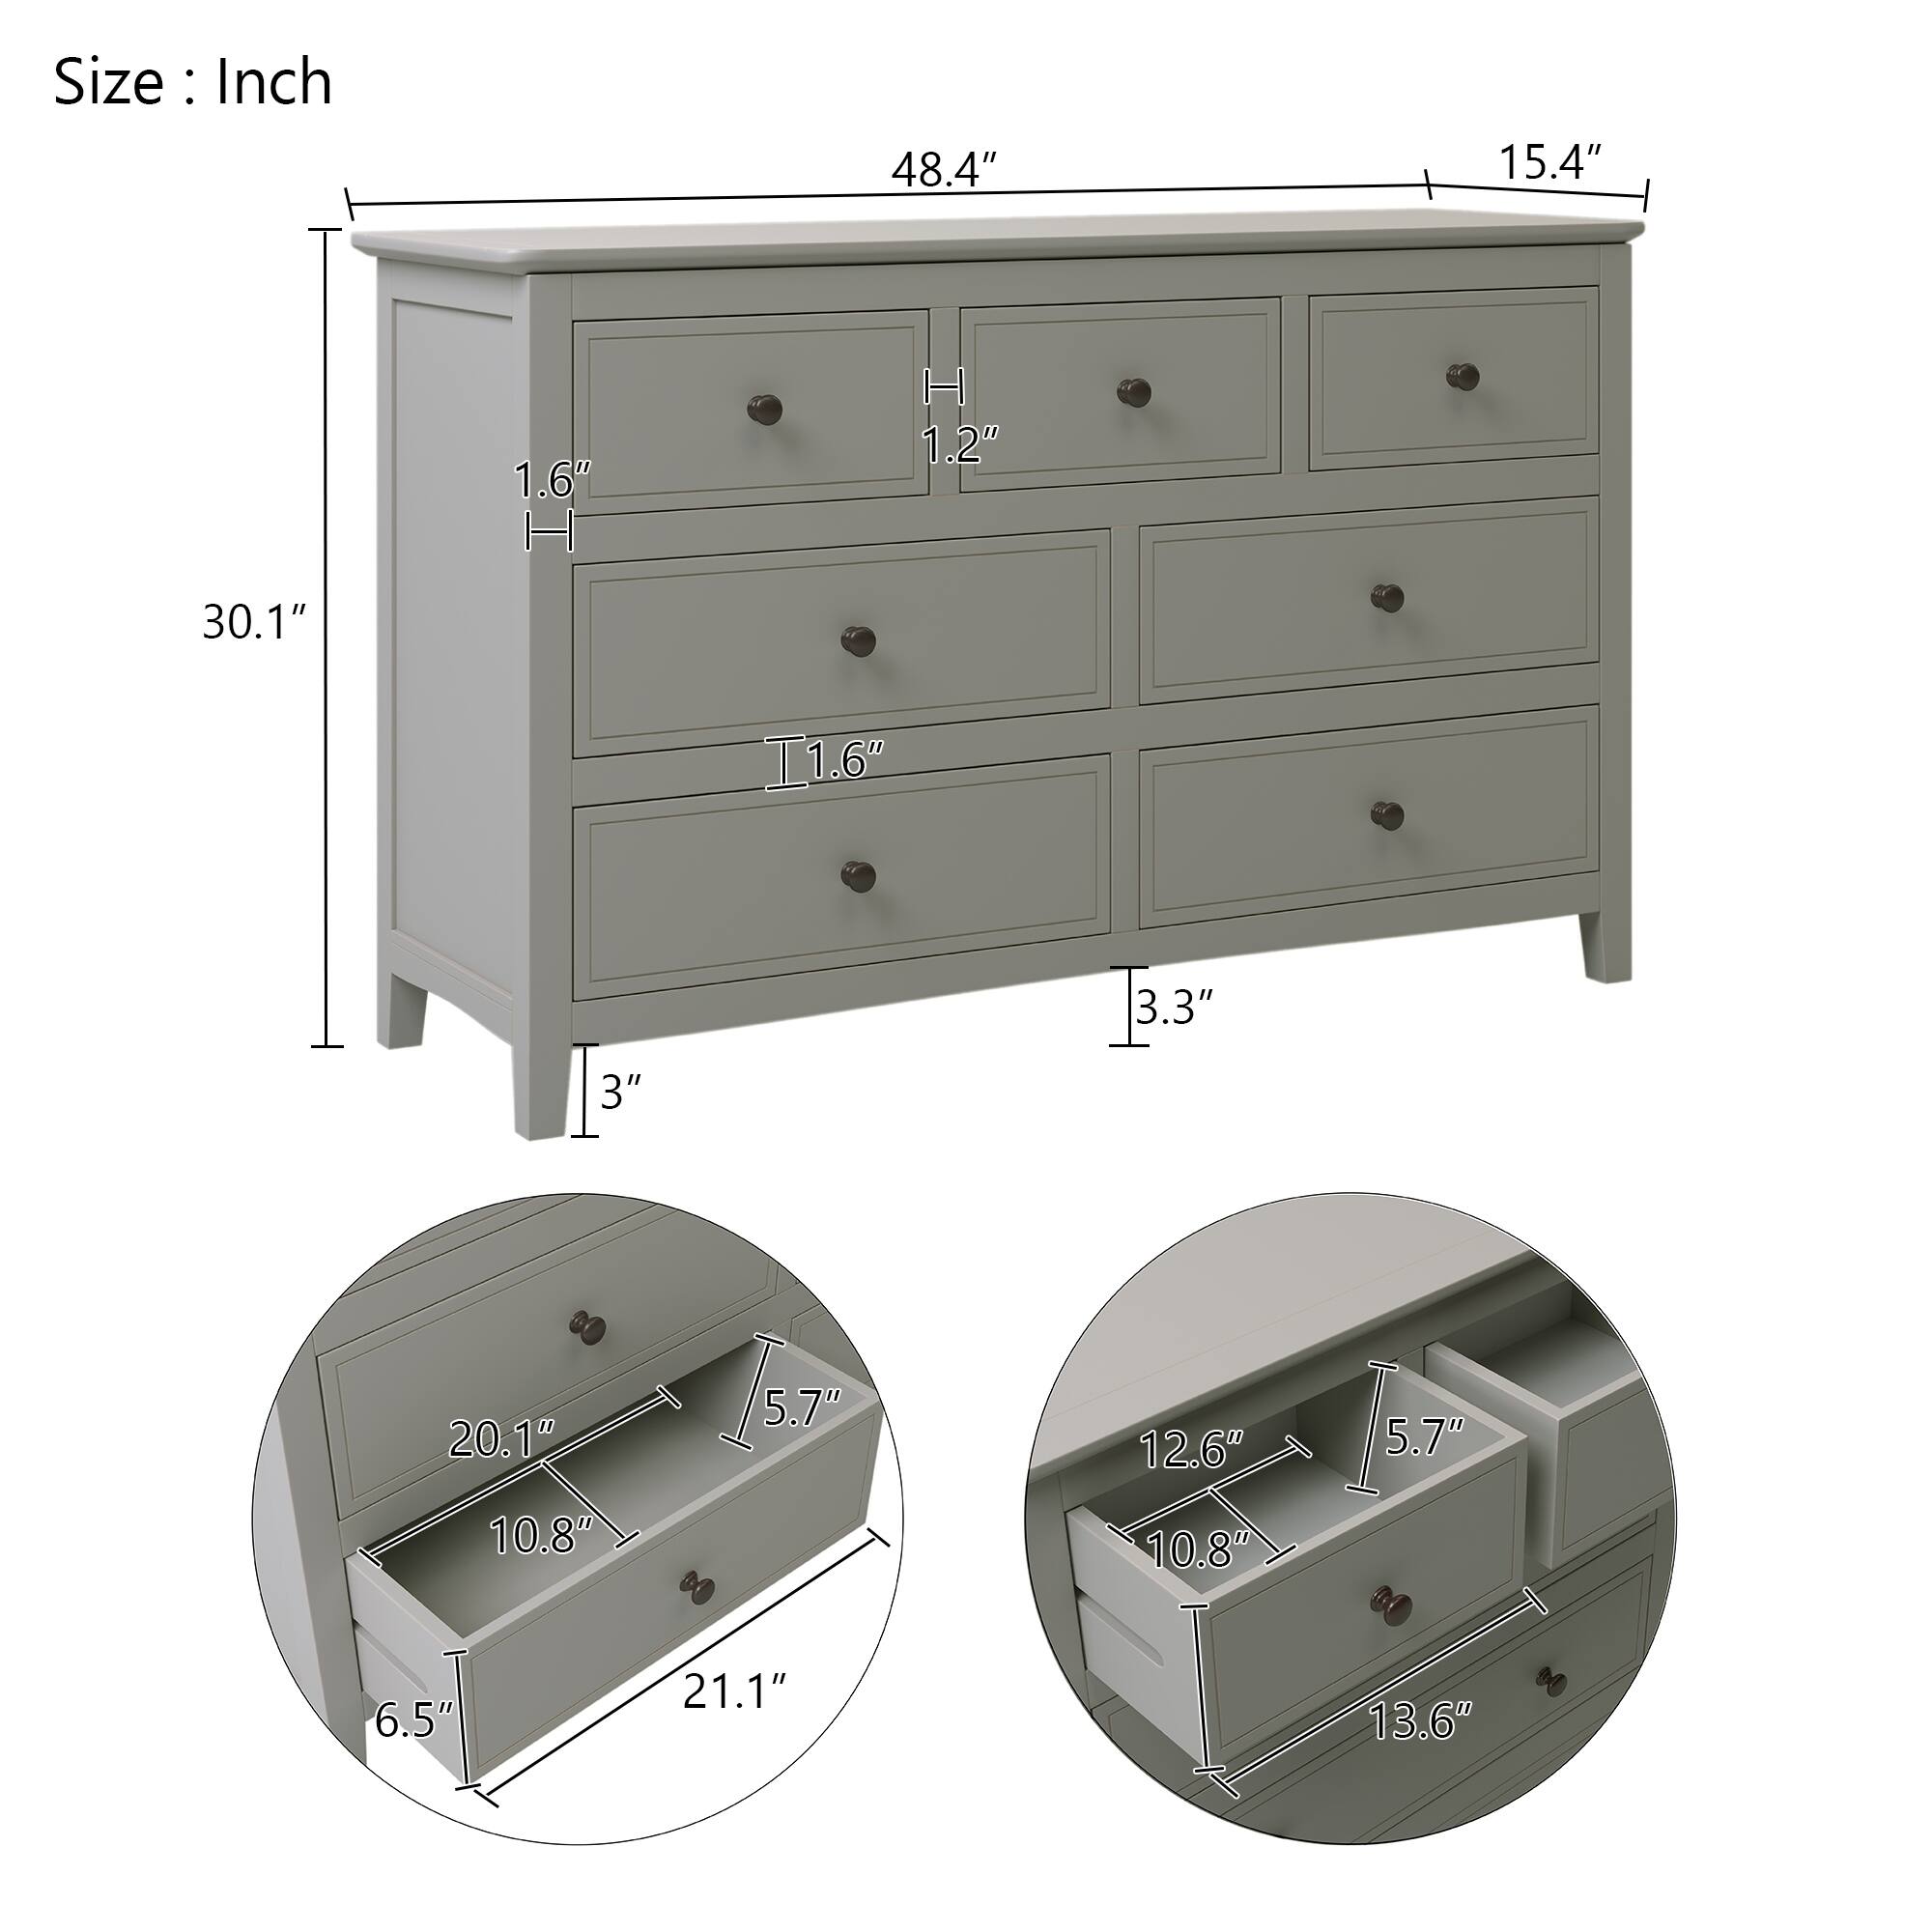 Retro Design Rattan Wood Drawer Dresser Bar Cabinet Side Cabinet Storge ...